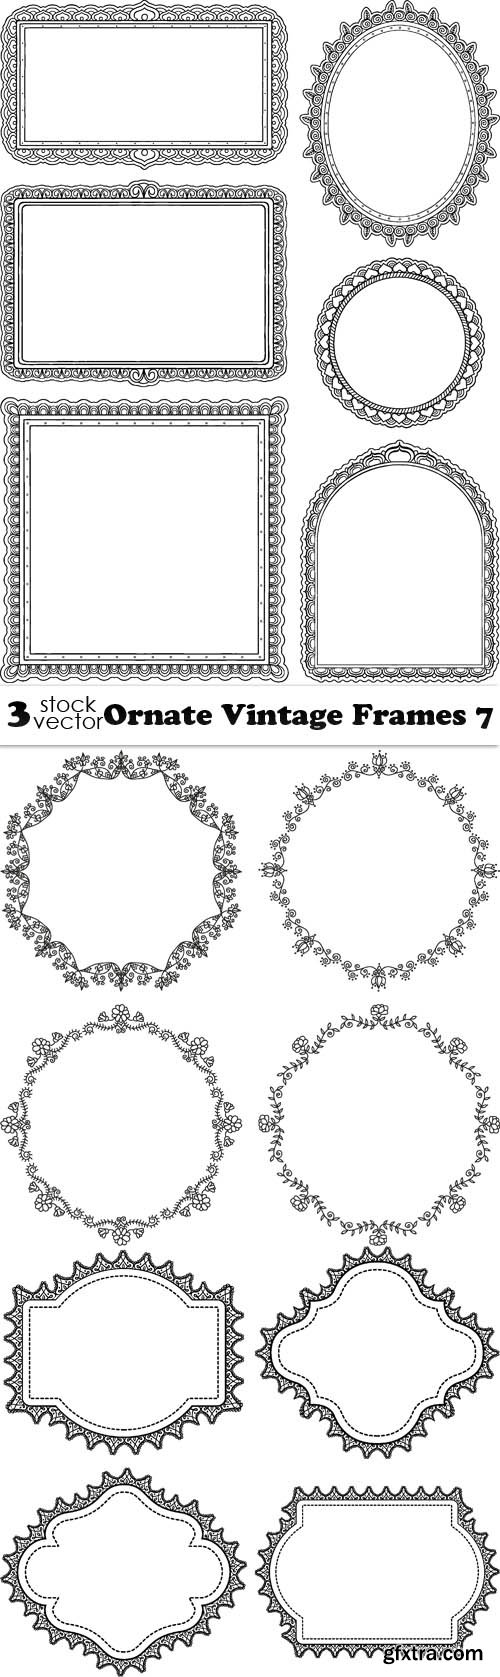 Vectors - Ornate Vintage Frames 7